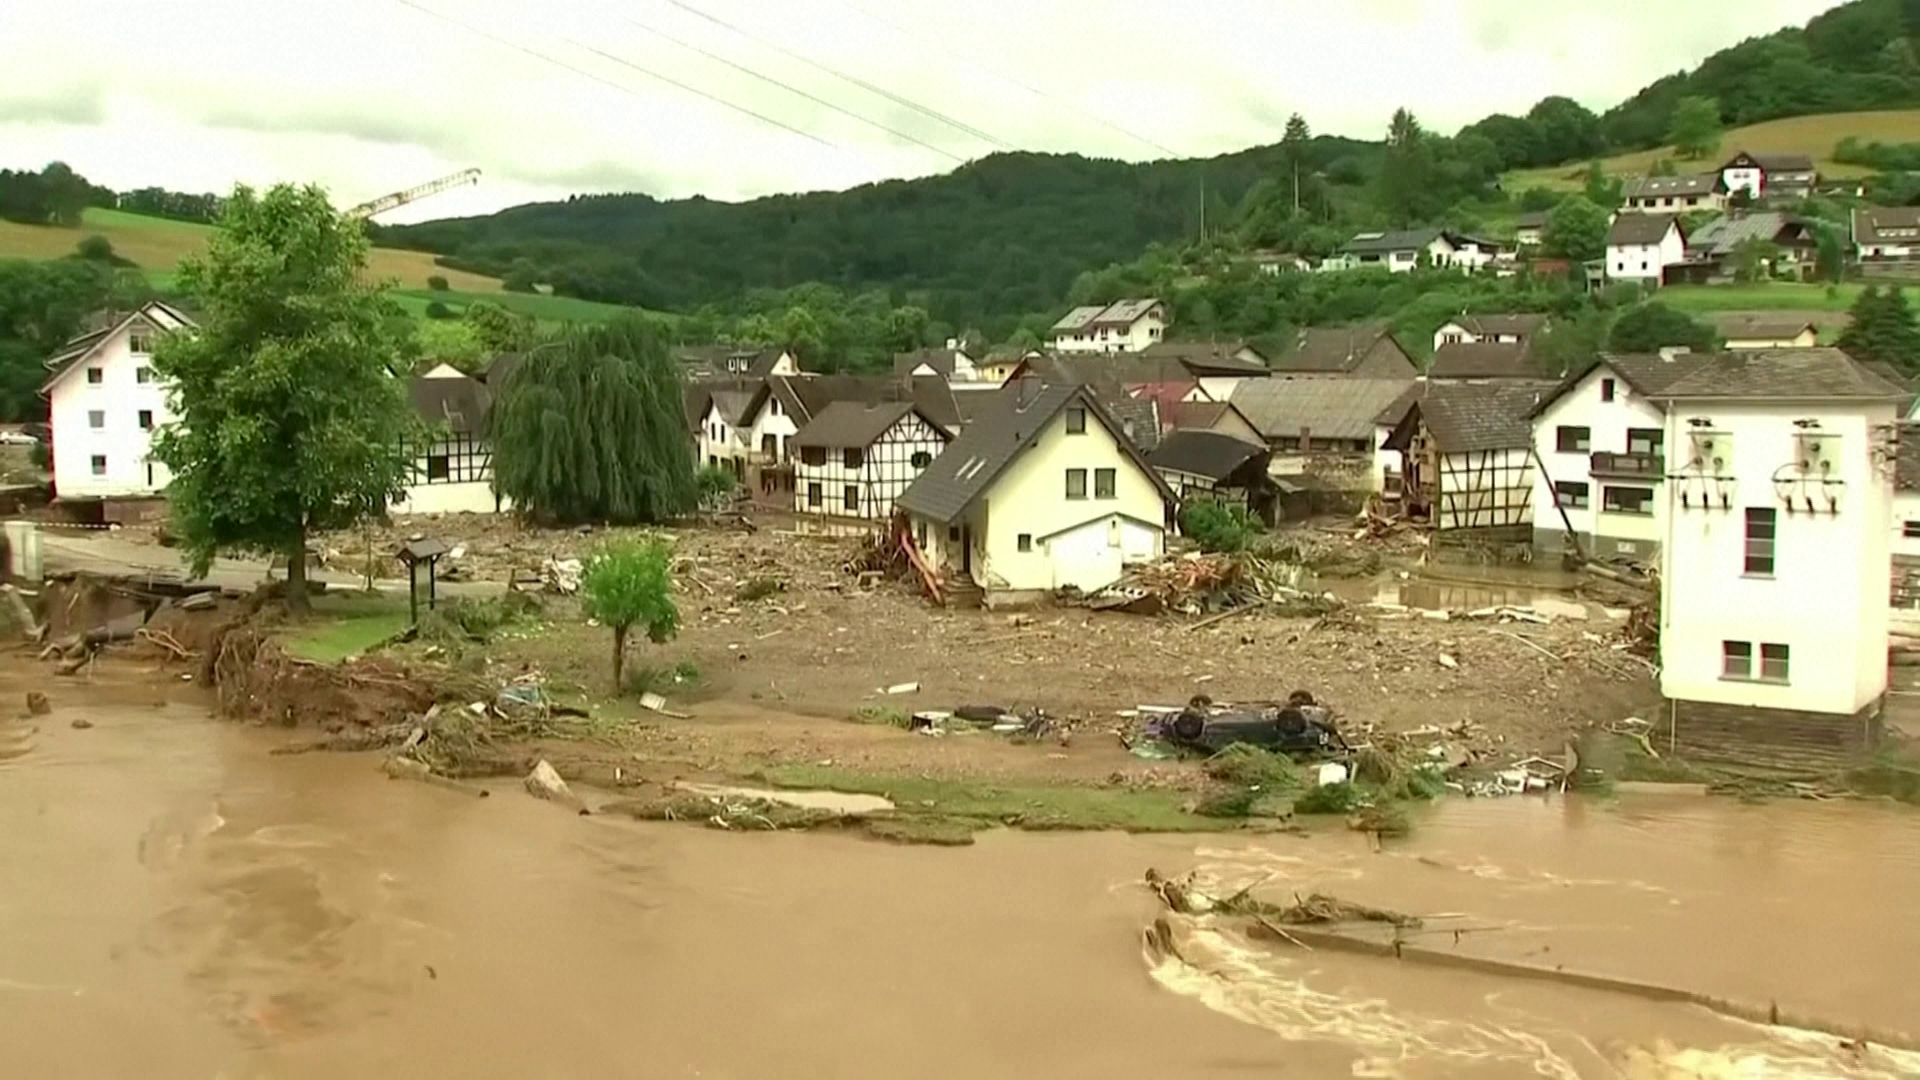 Óriási károkat okozott az árvíz Nyugat-Európában